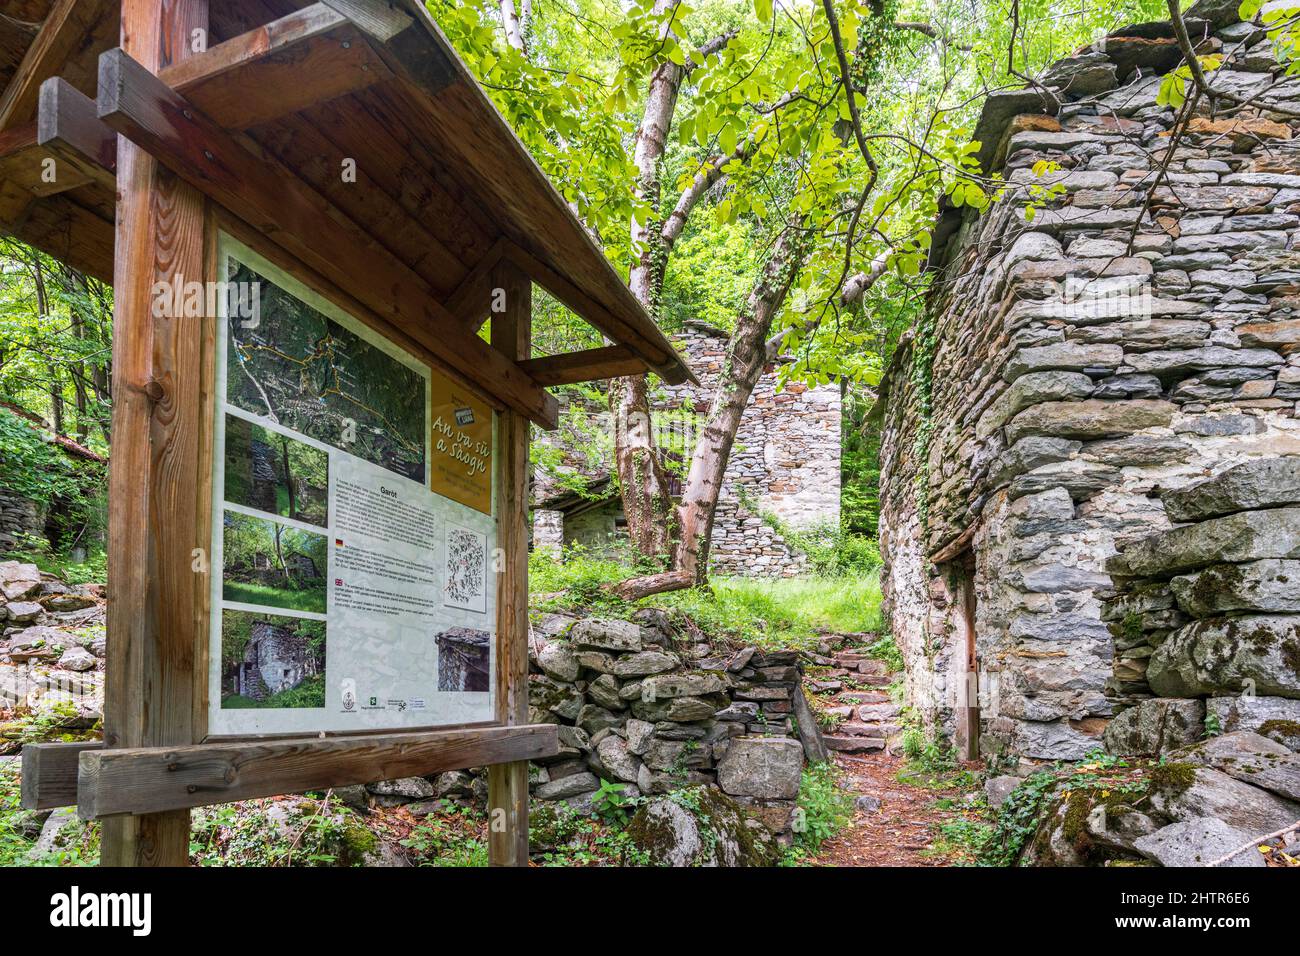 Stone huts and hiking signage along the alpine path of Crana Savogno, Piuro, Valchiavenna, Valtellina, Lombardy, Italy Stock Photo